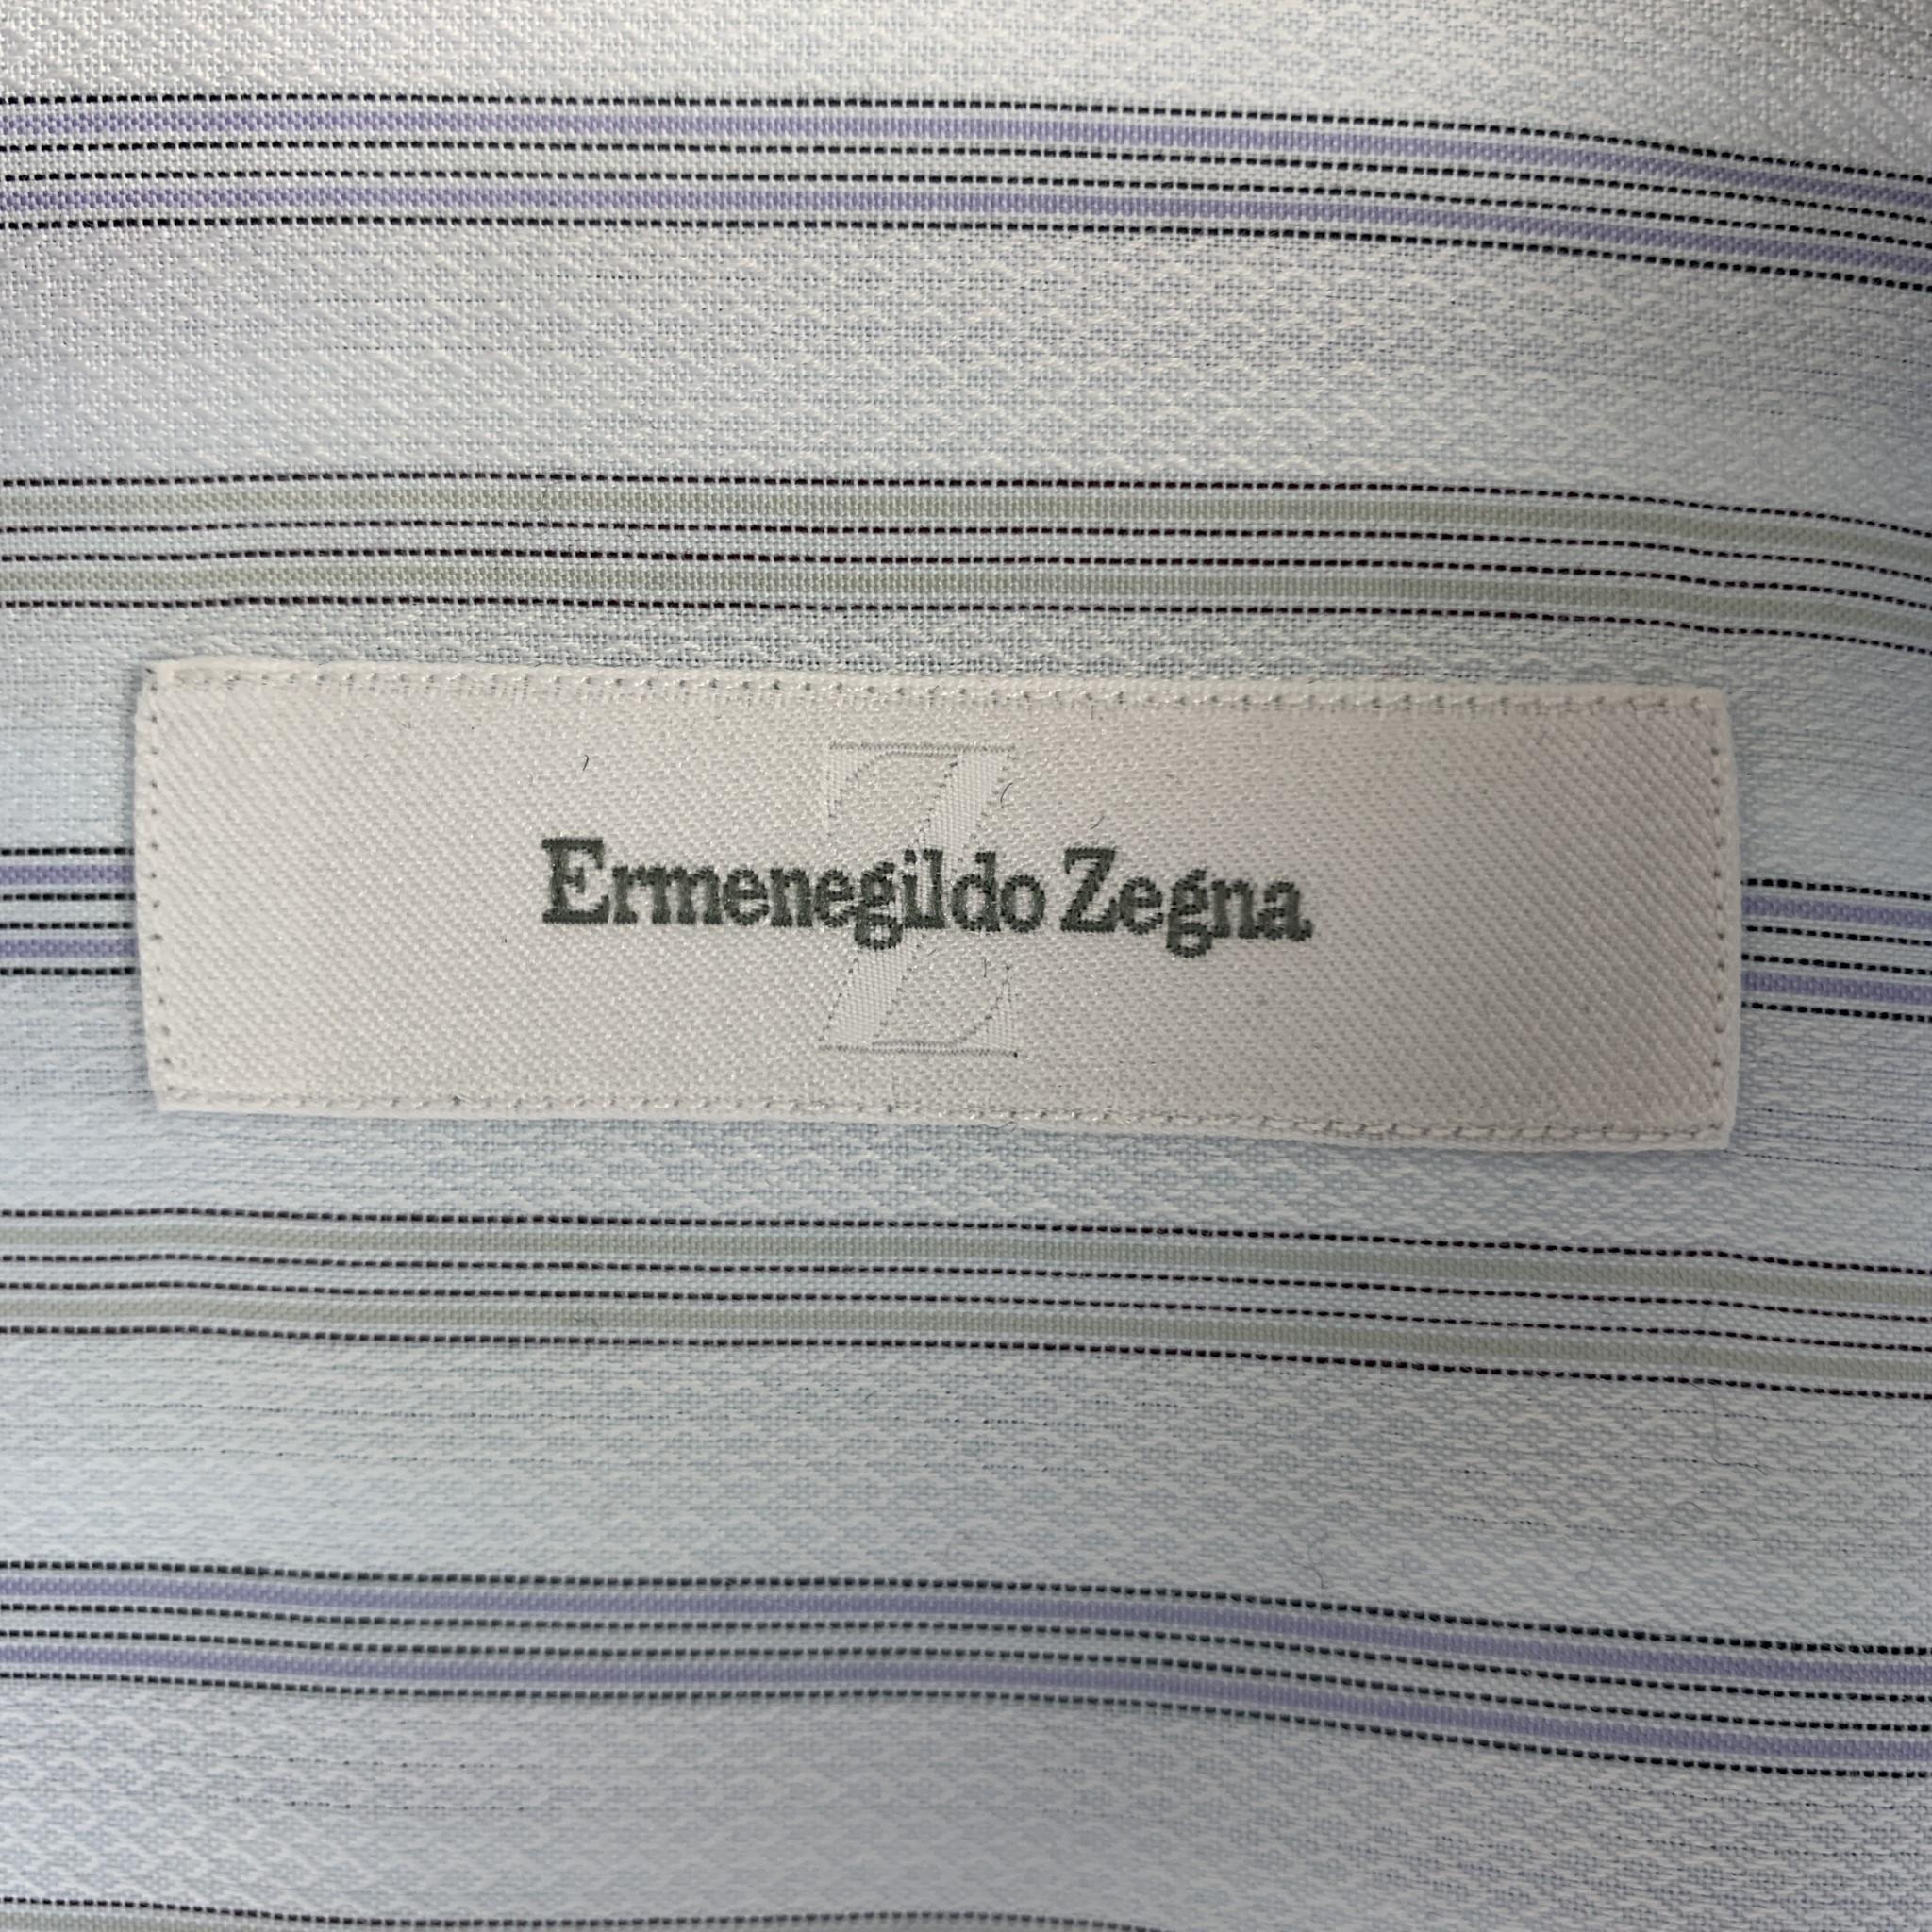 zegna cufflink shirt